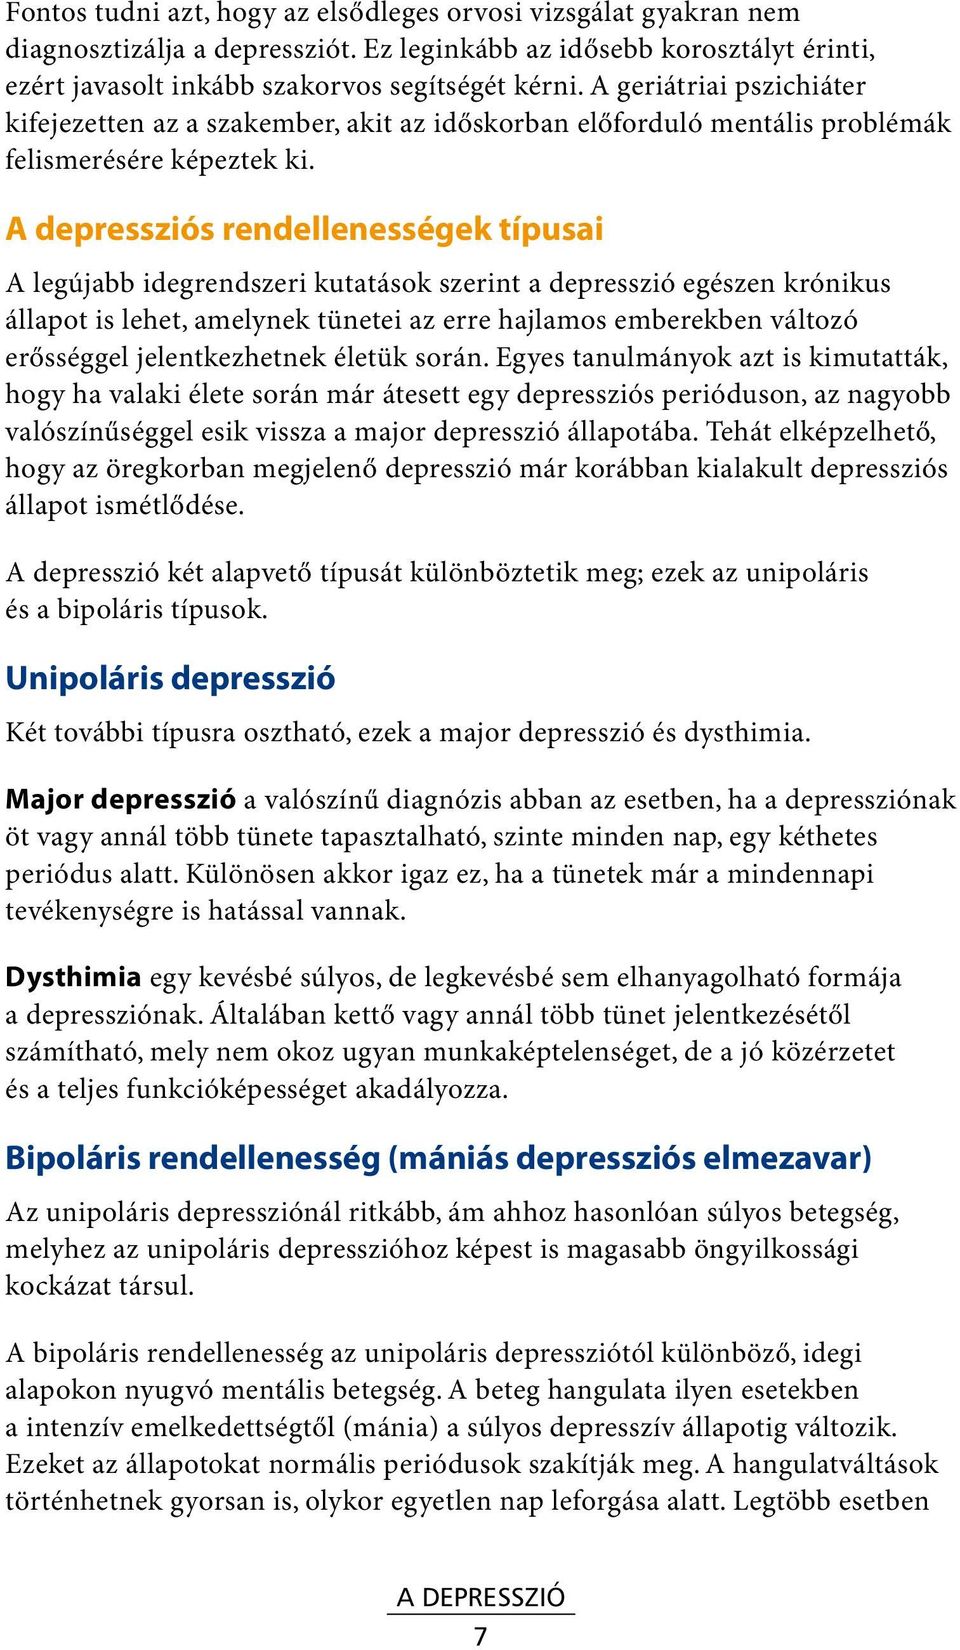 A depressziós rendellenességek típusai A legújabb idegrendszeri kutatások szerint a depresszió egészen krónikus állapot is lehet, amelynek tünetei az erre hajlamos emberekben változó erősséggel